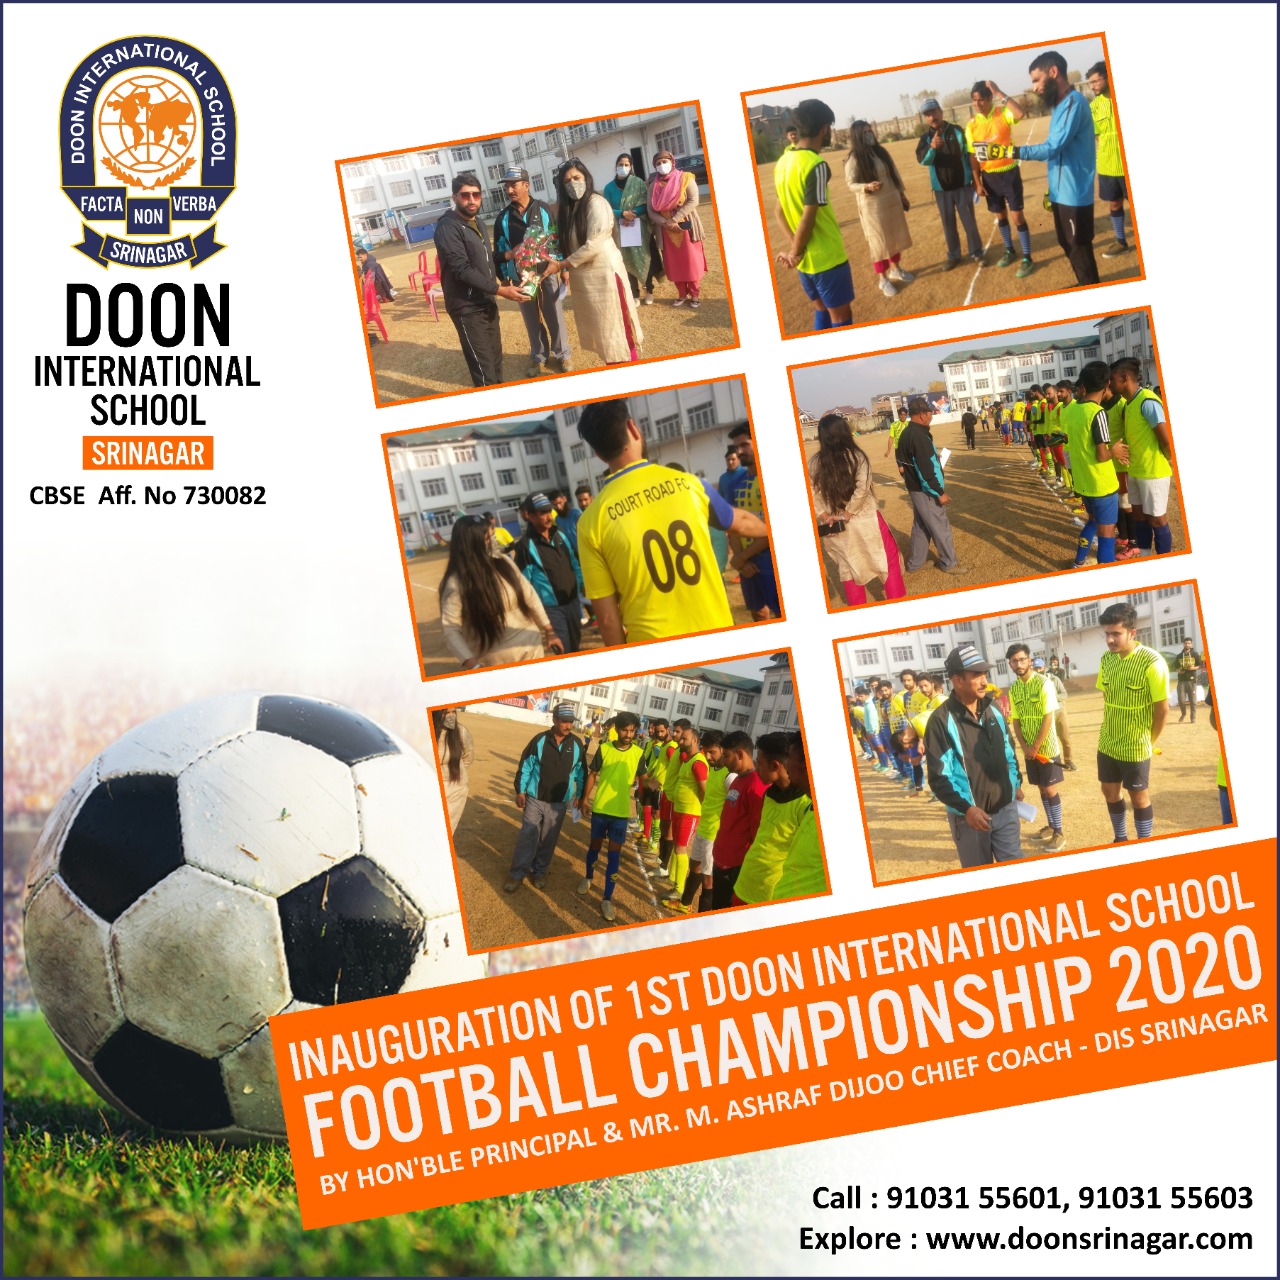 1st Doon Football Championship 2020